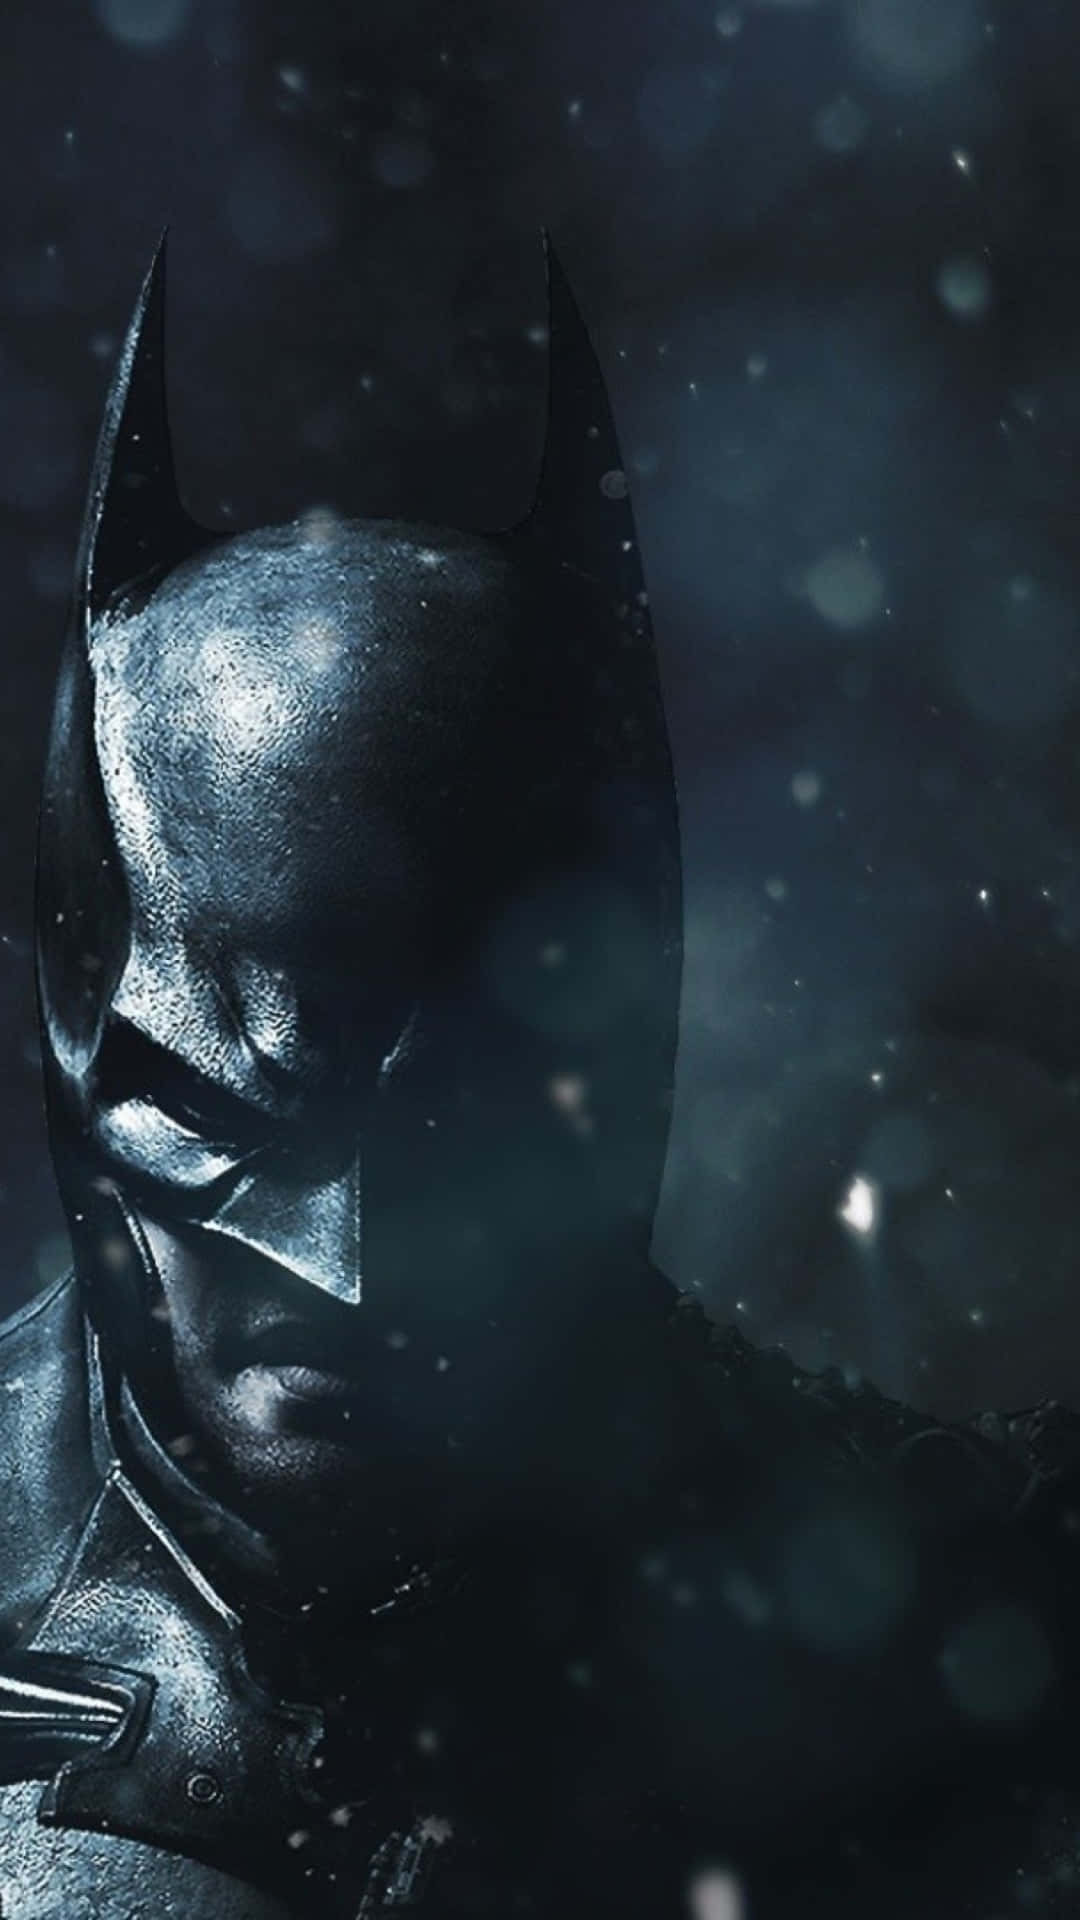 Bliv uforskammed med det fantastiske Batman iPhone baggrundsbillede Wallpaper